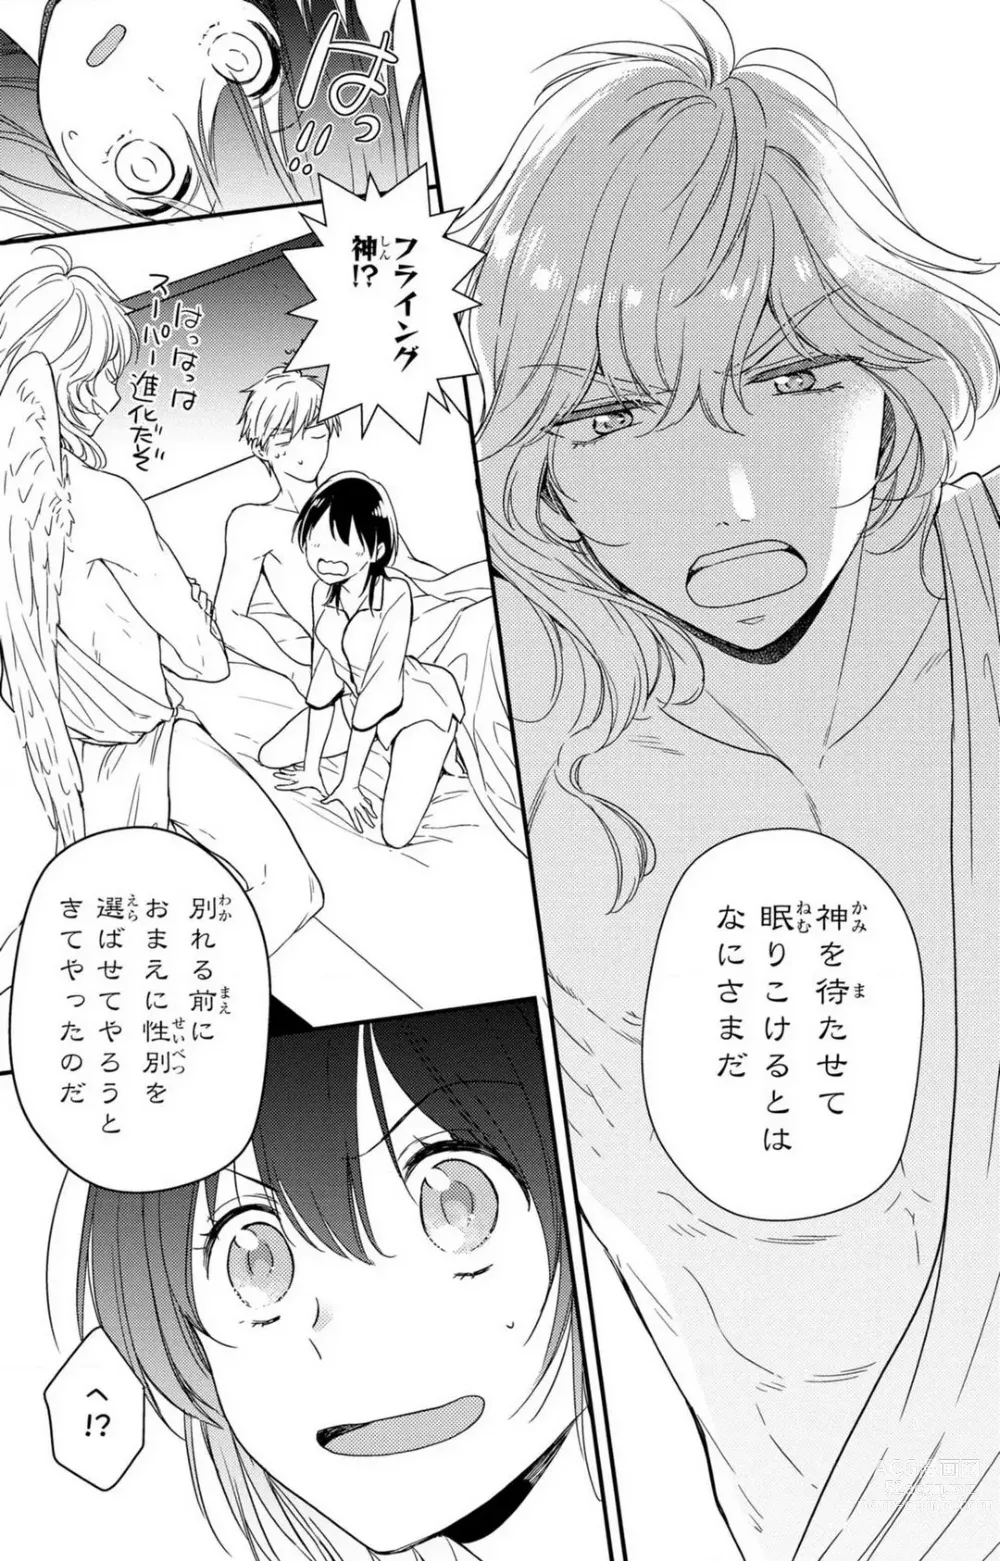 Page 204 of manga Doutei Danshi Nyotaika